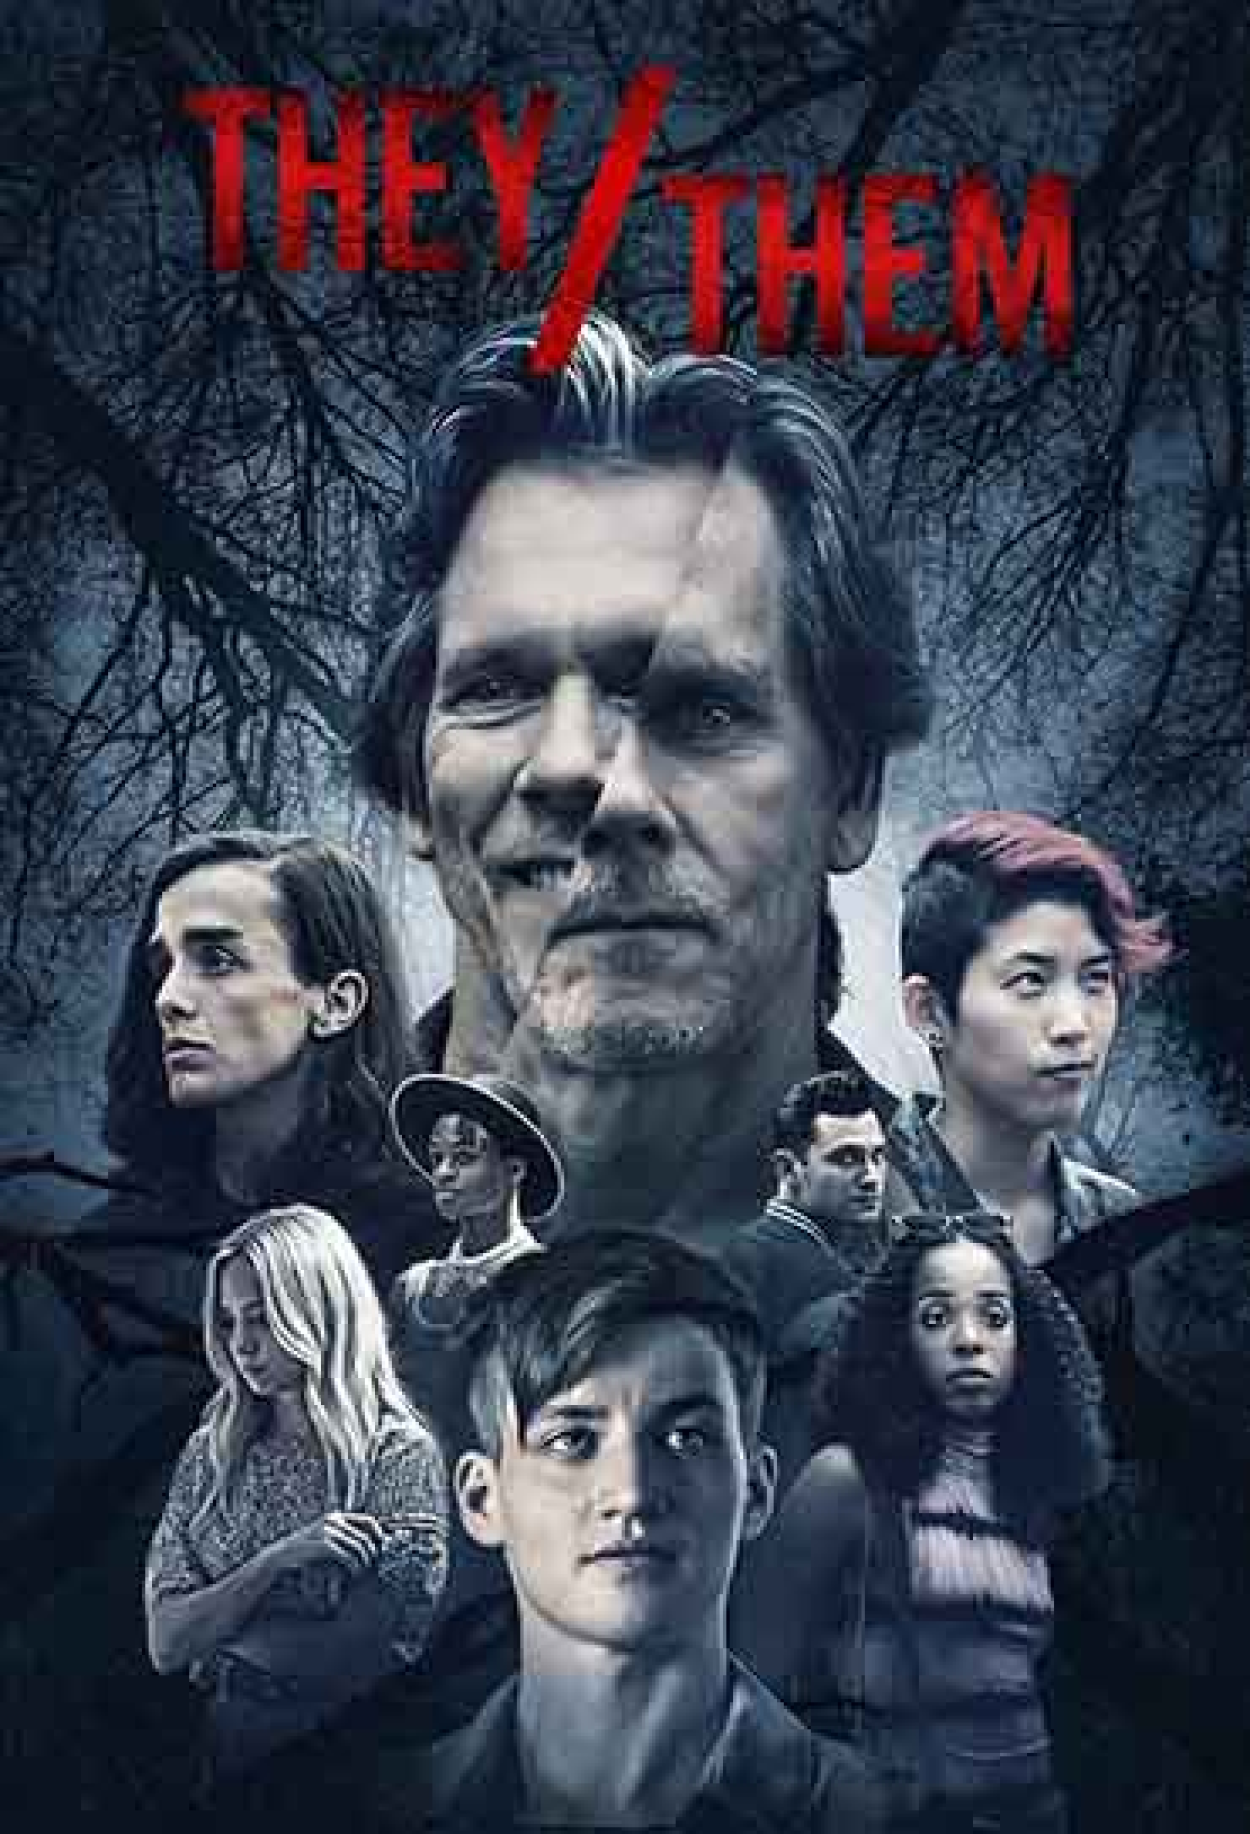 The Witcher: A Origem ganha trailer completo com grande elenco - Cinema10